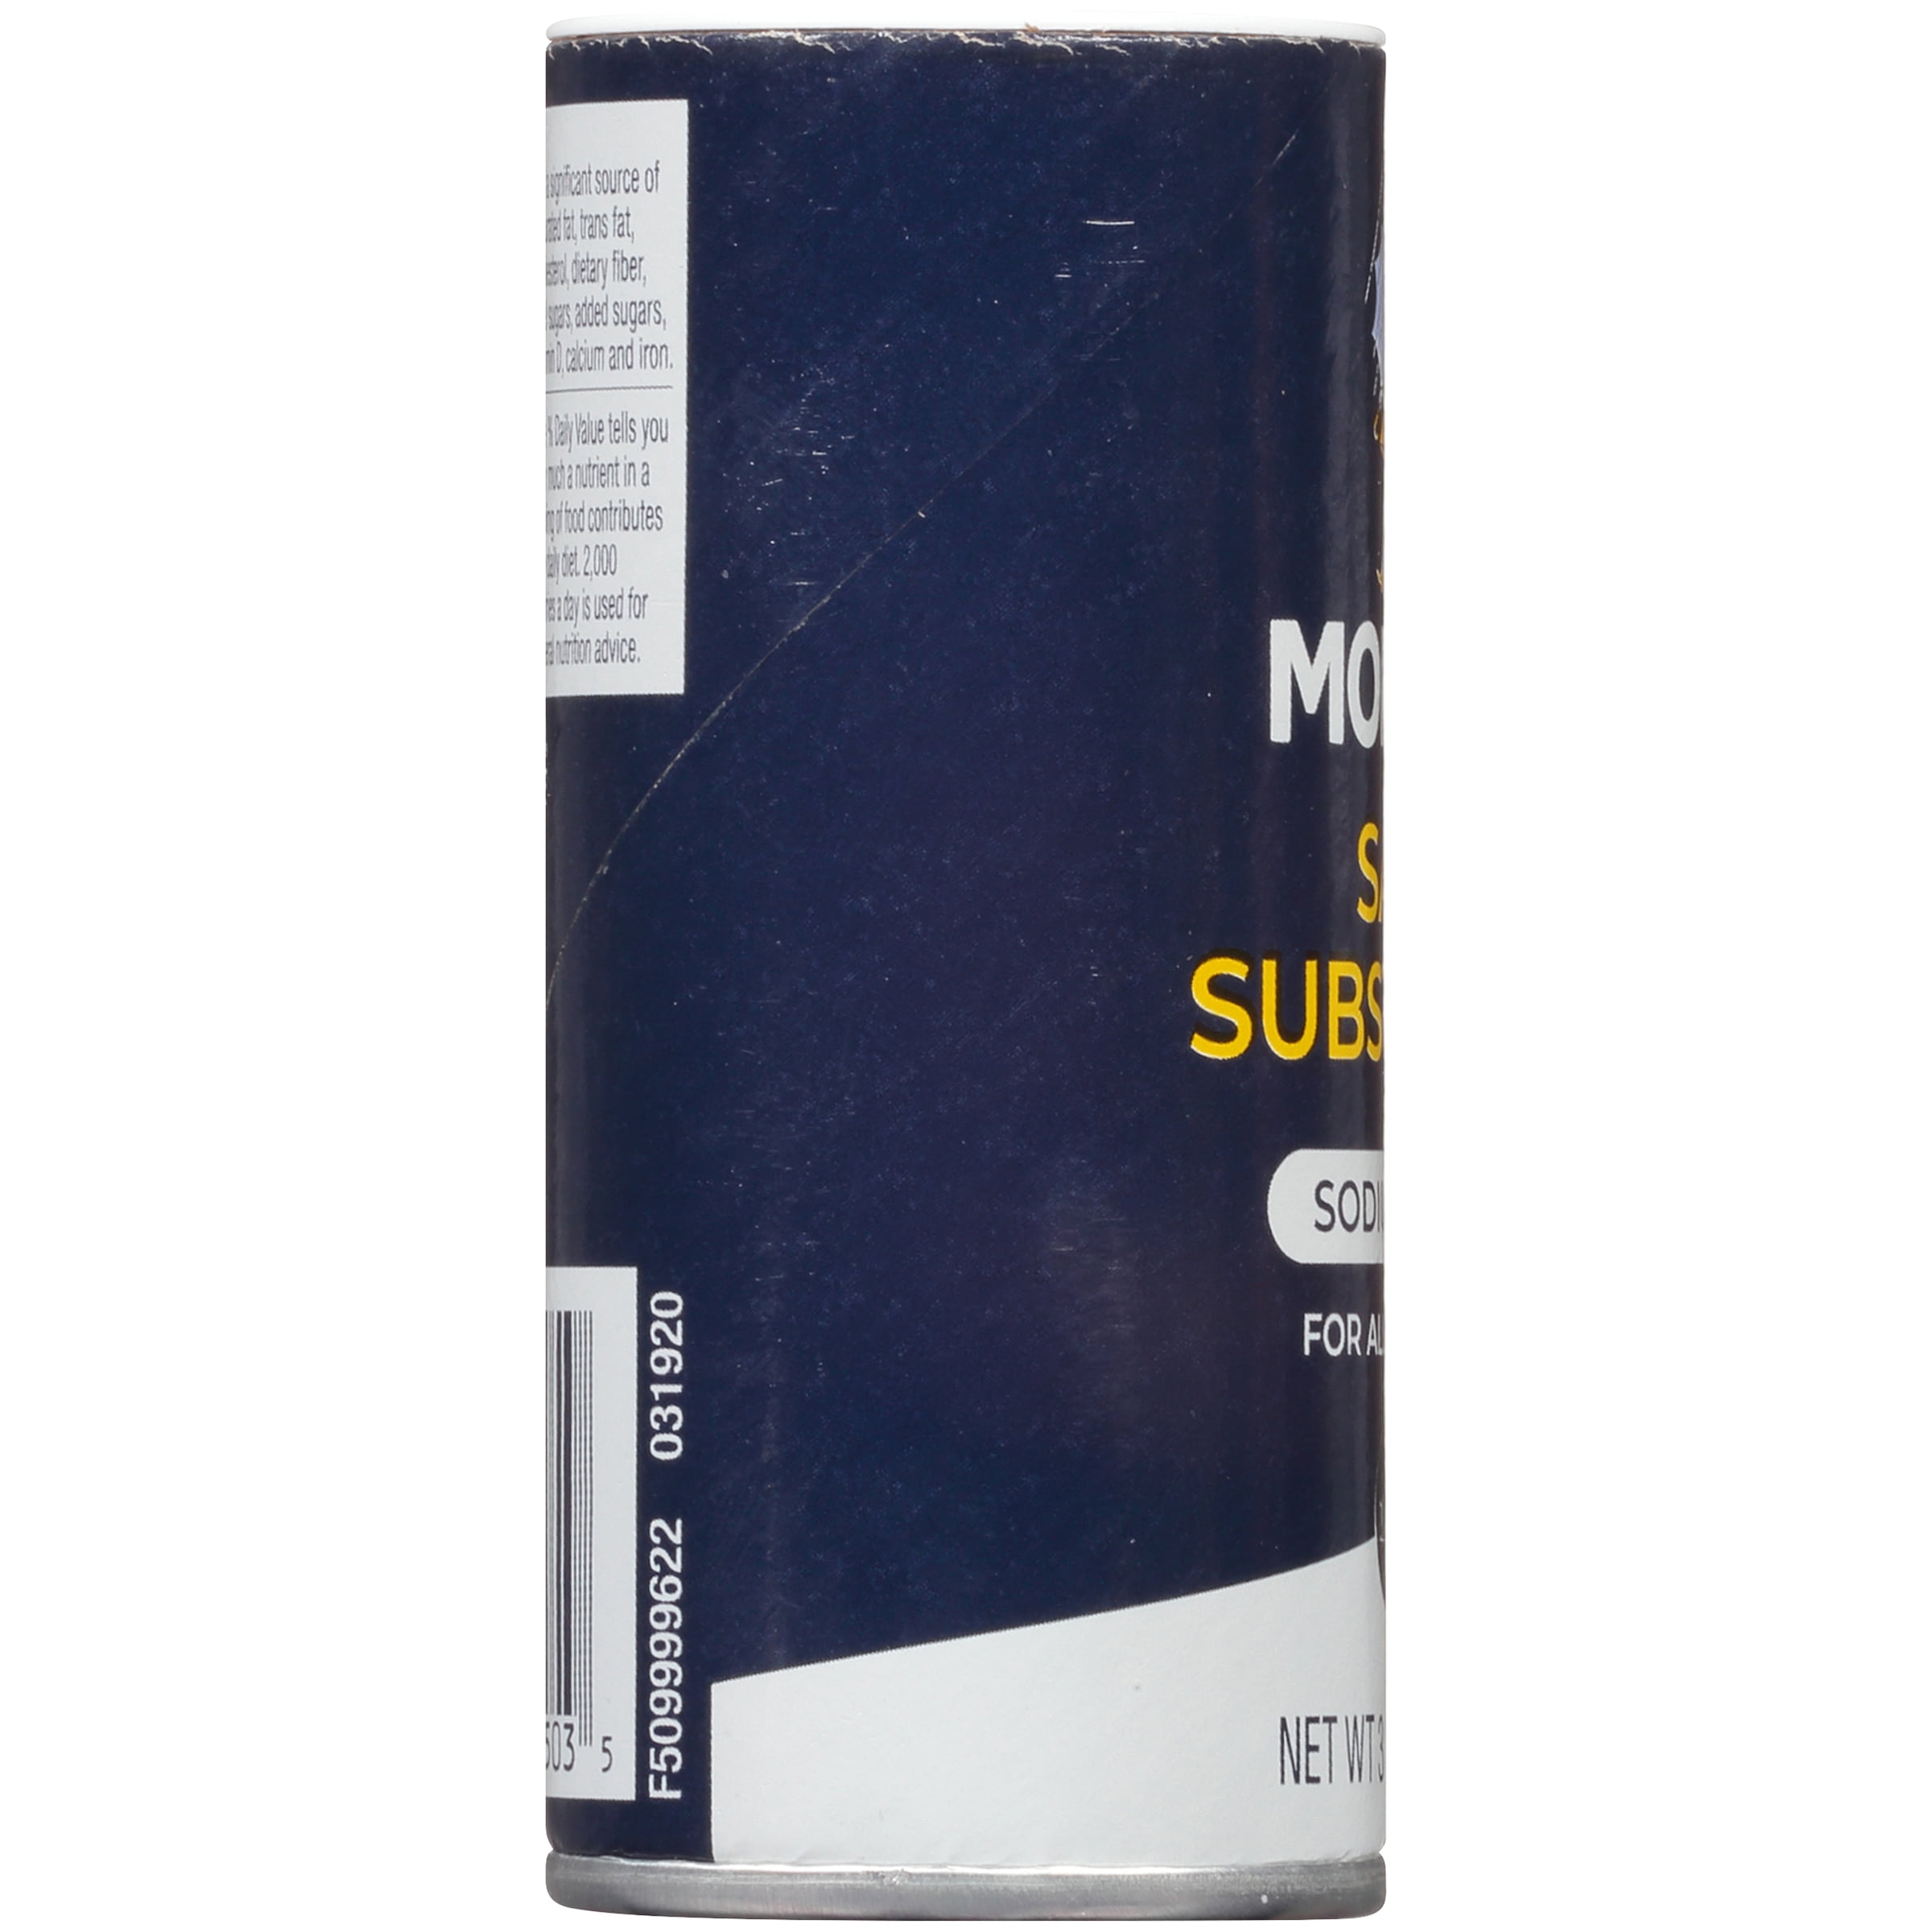 Morton Sodium Free Salt Substitute - 3.12 oz